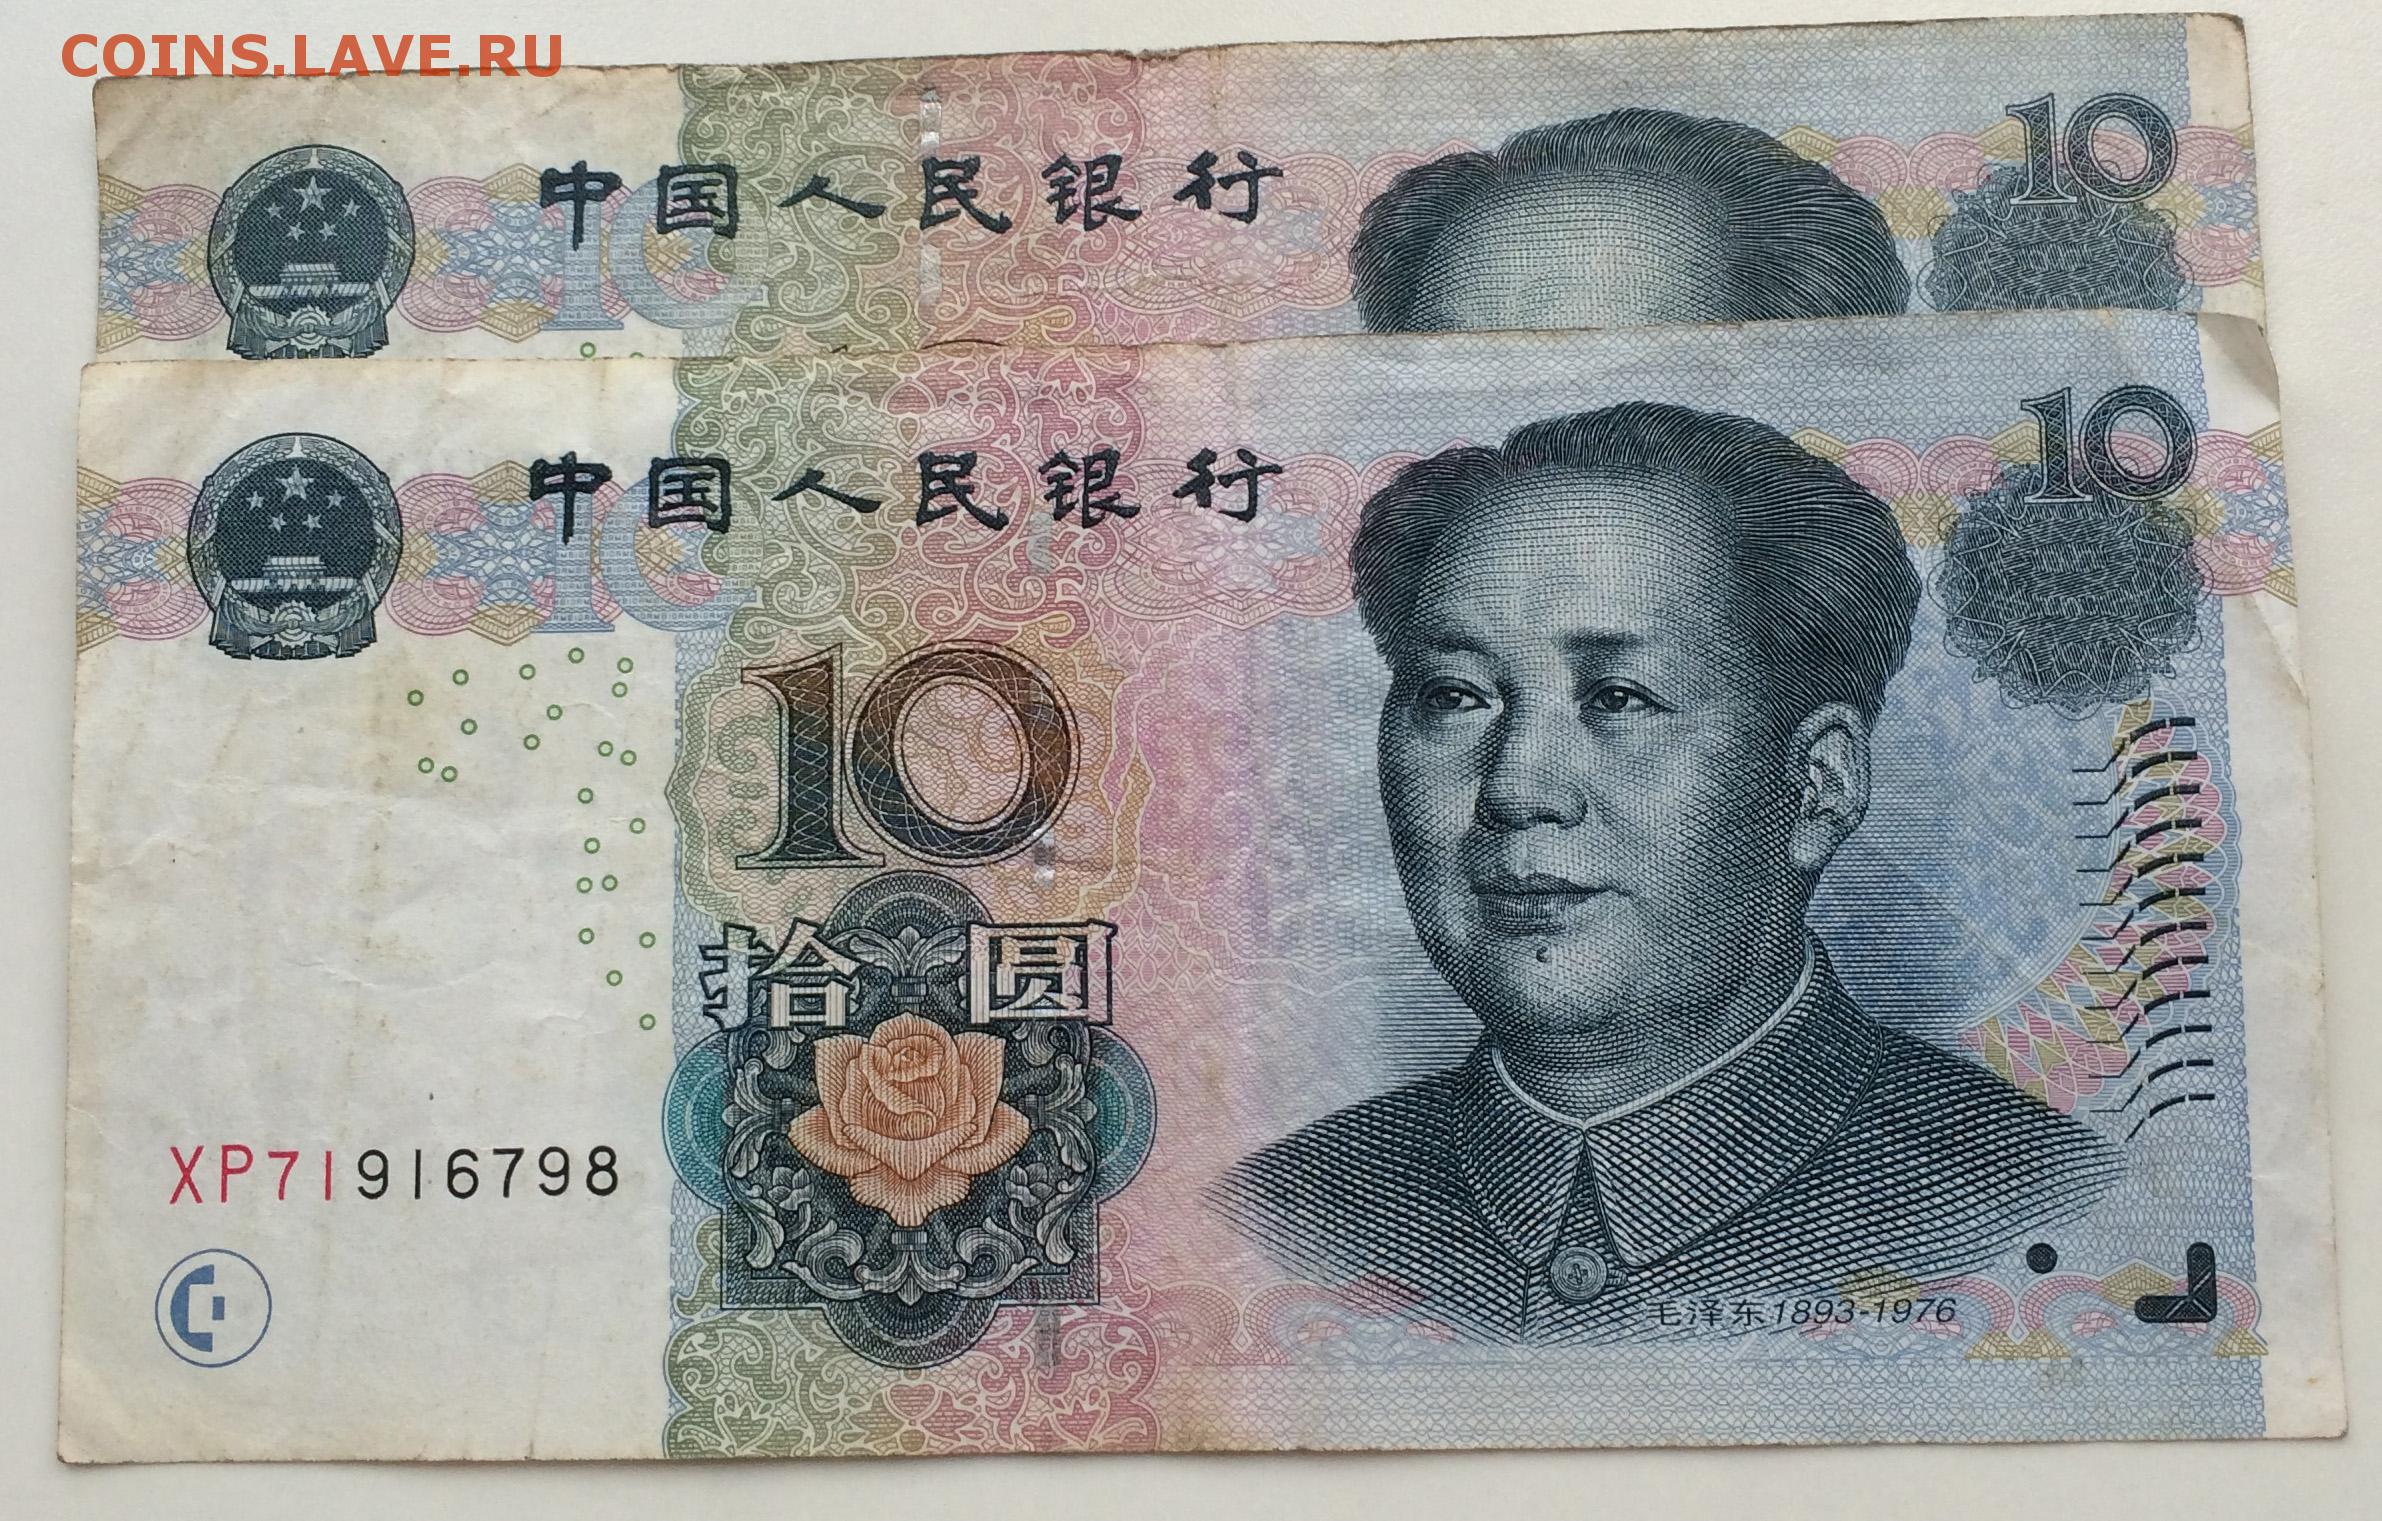 0 10 на китайском. 10 Китайских юаней. Банкнота 10 юань Китай. Китайский юань 2005 года. Купюра 10 юаней 2005.